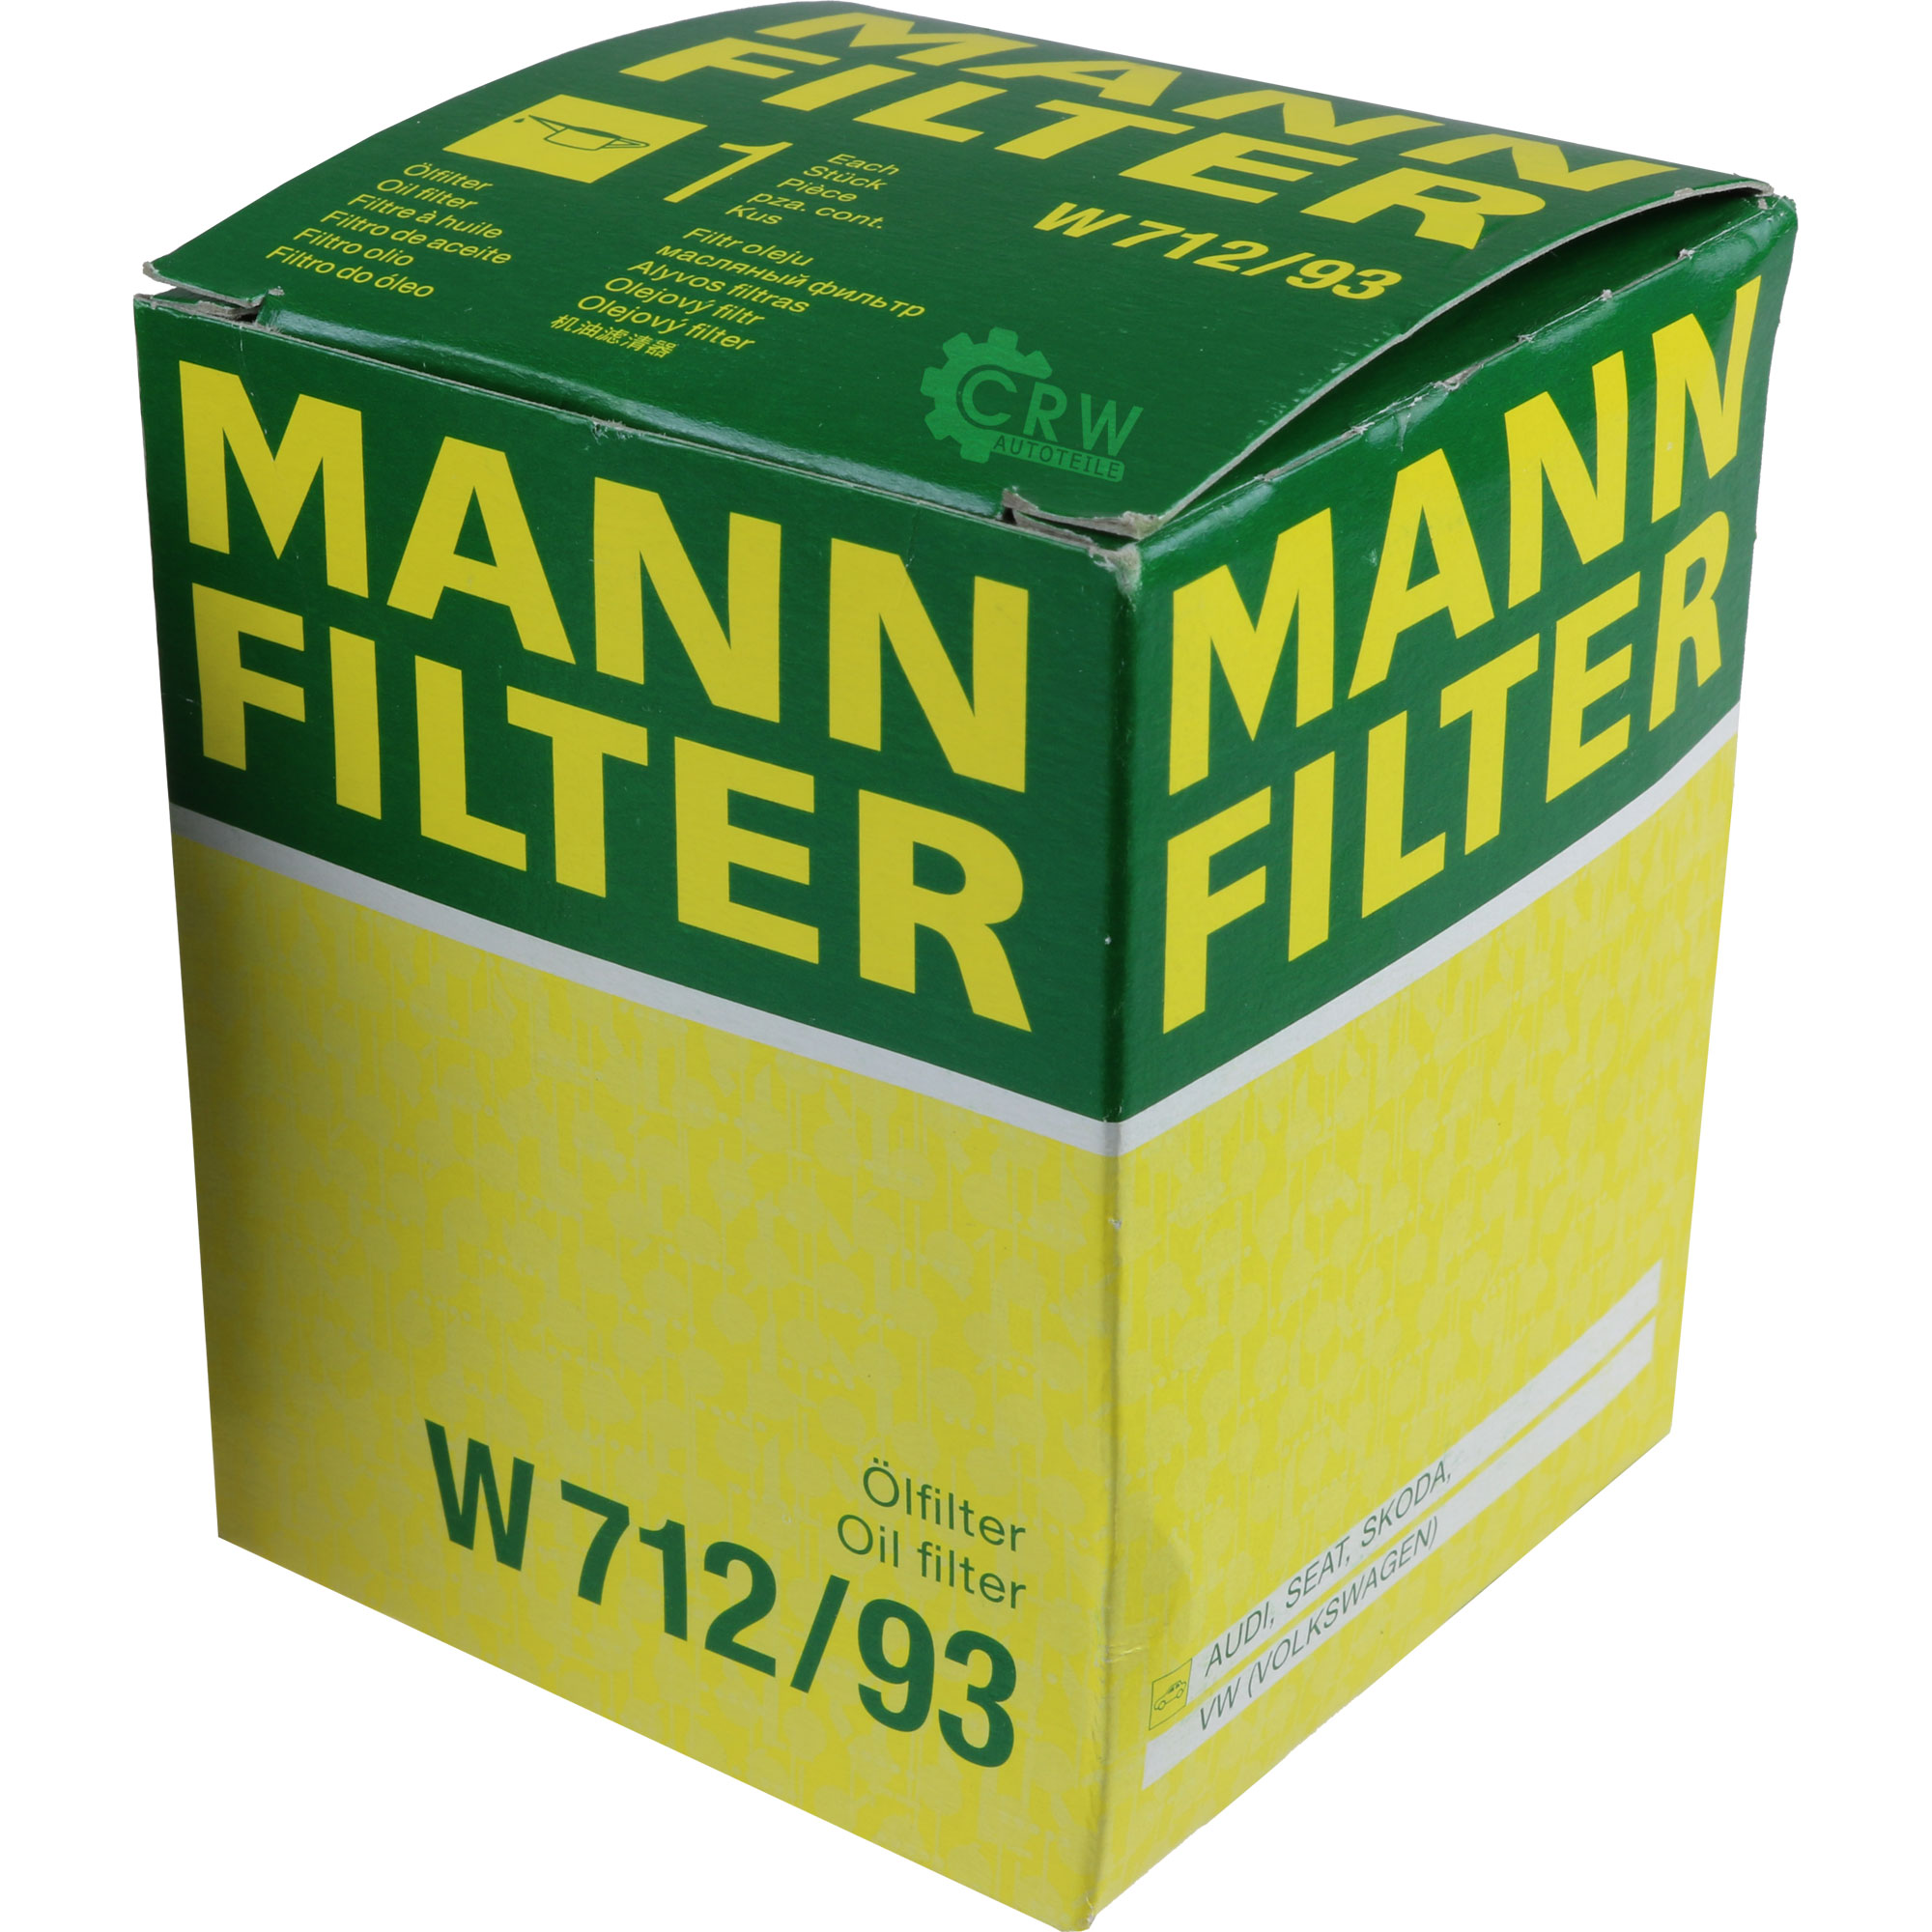 MANN-FILTER Ölfilter W 712/93 Oil Filter